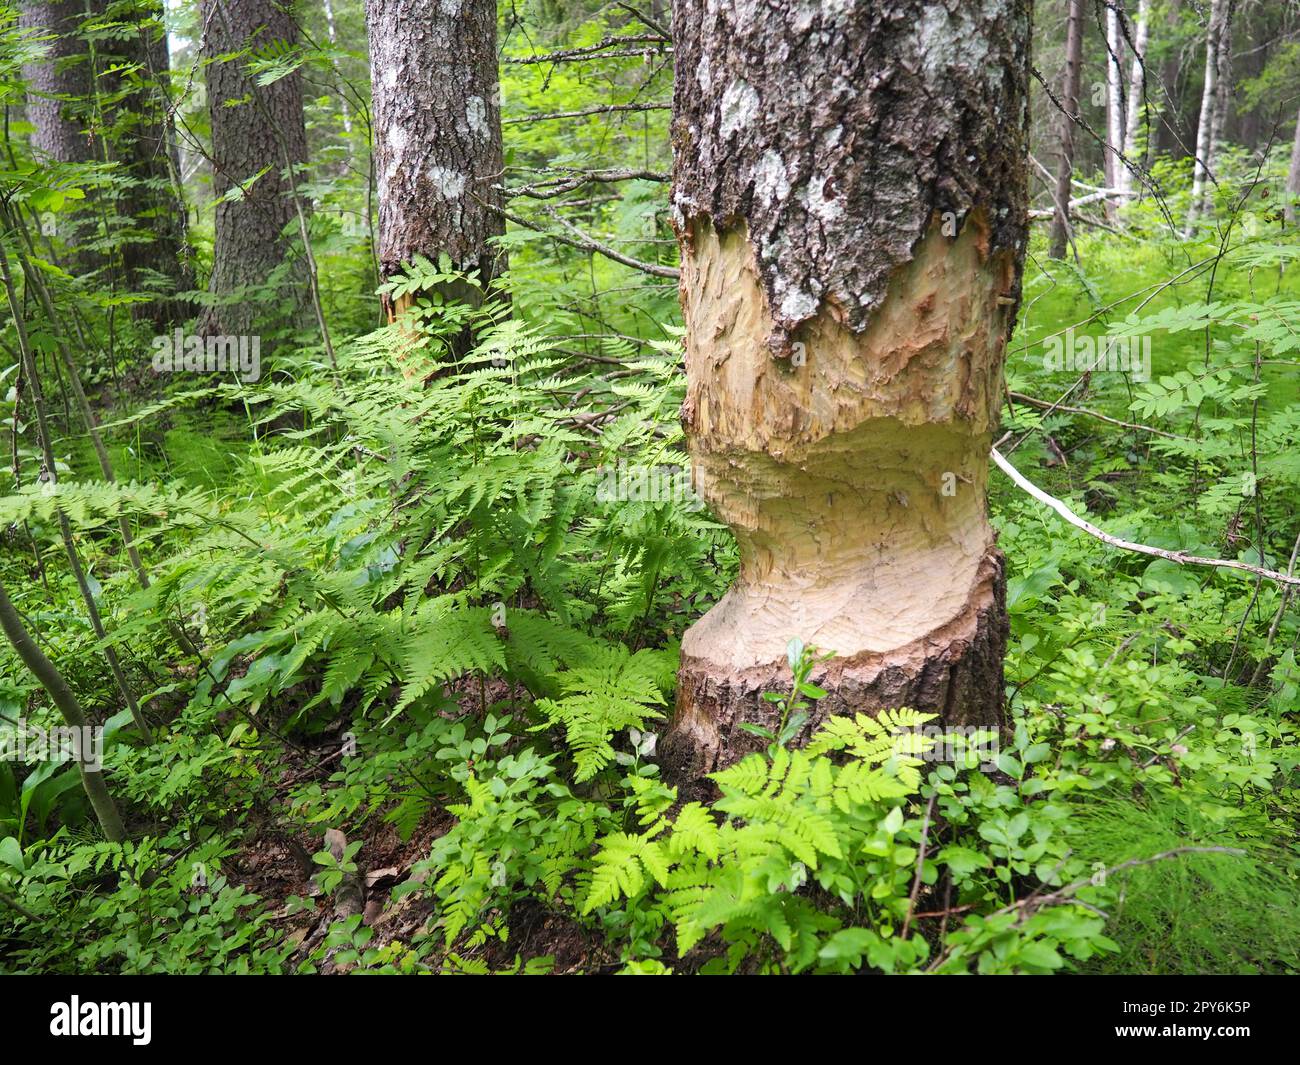 Ein Baum, der von einem Biber genagt wurde. Beschädigte Rinde und beschädigtes Holz. Die Arbeit eines Bibers für den Bau eines Dammes. Taiga, Karelien, Russland. Jagen und Angeln. Lebensaktivität der europäischen Waldtiere. Stockfoto